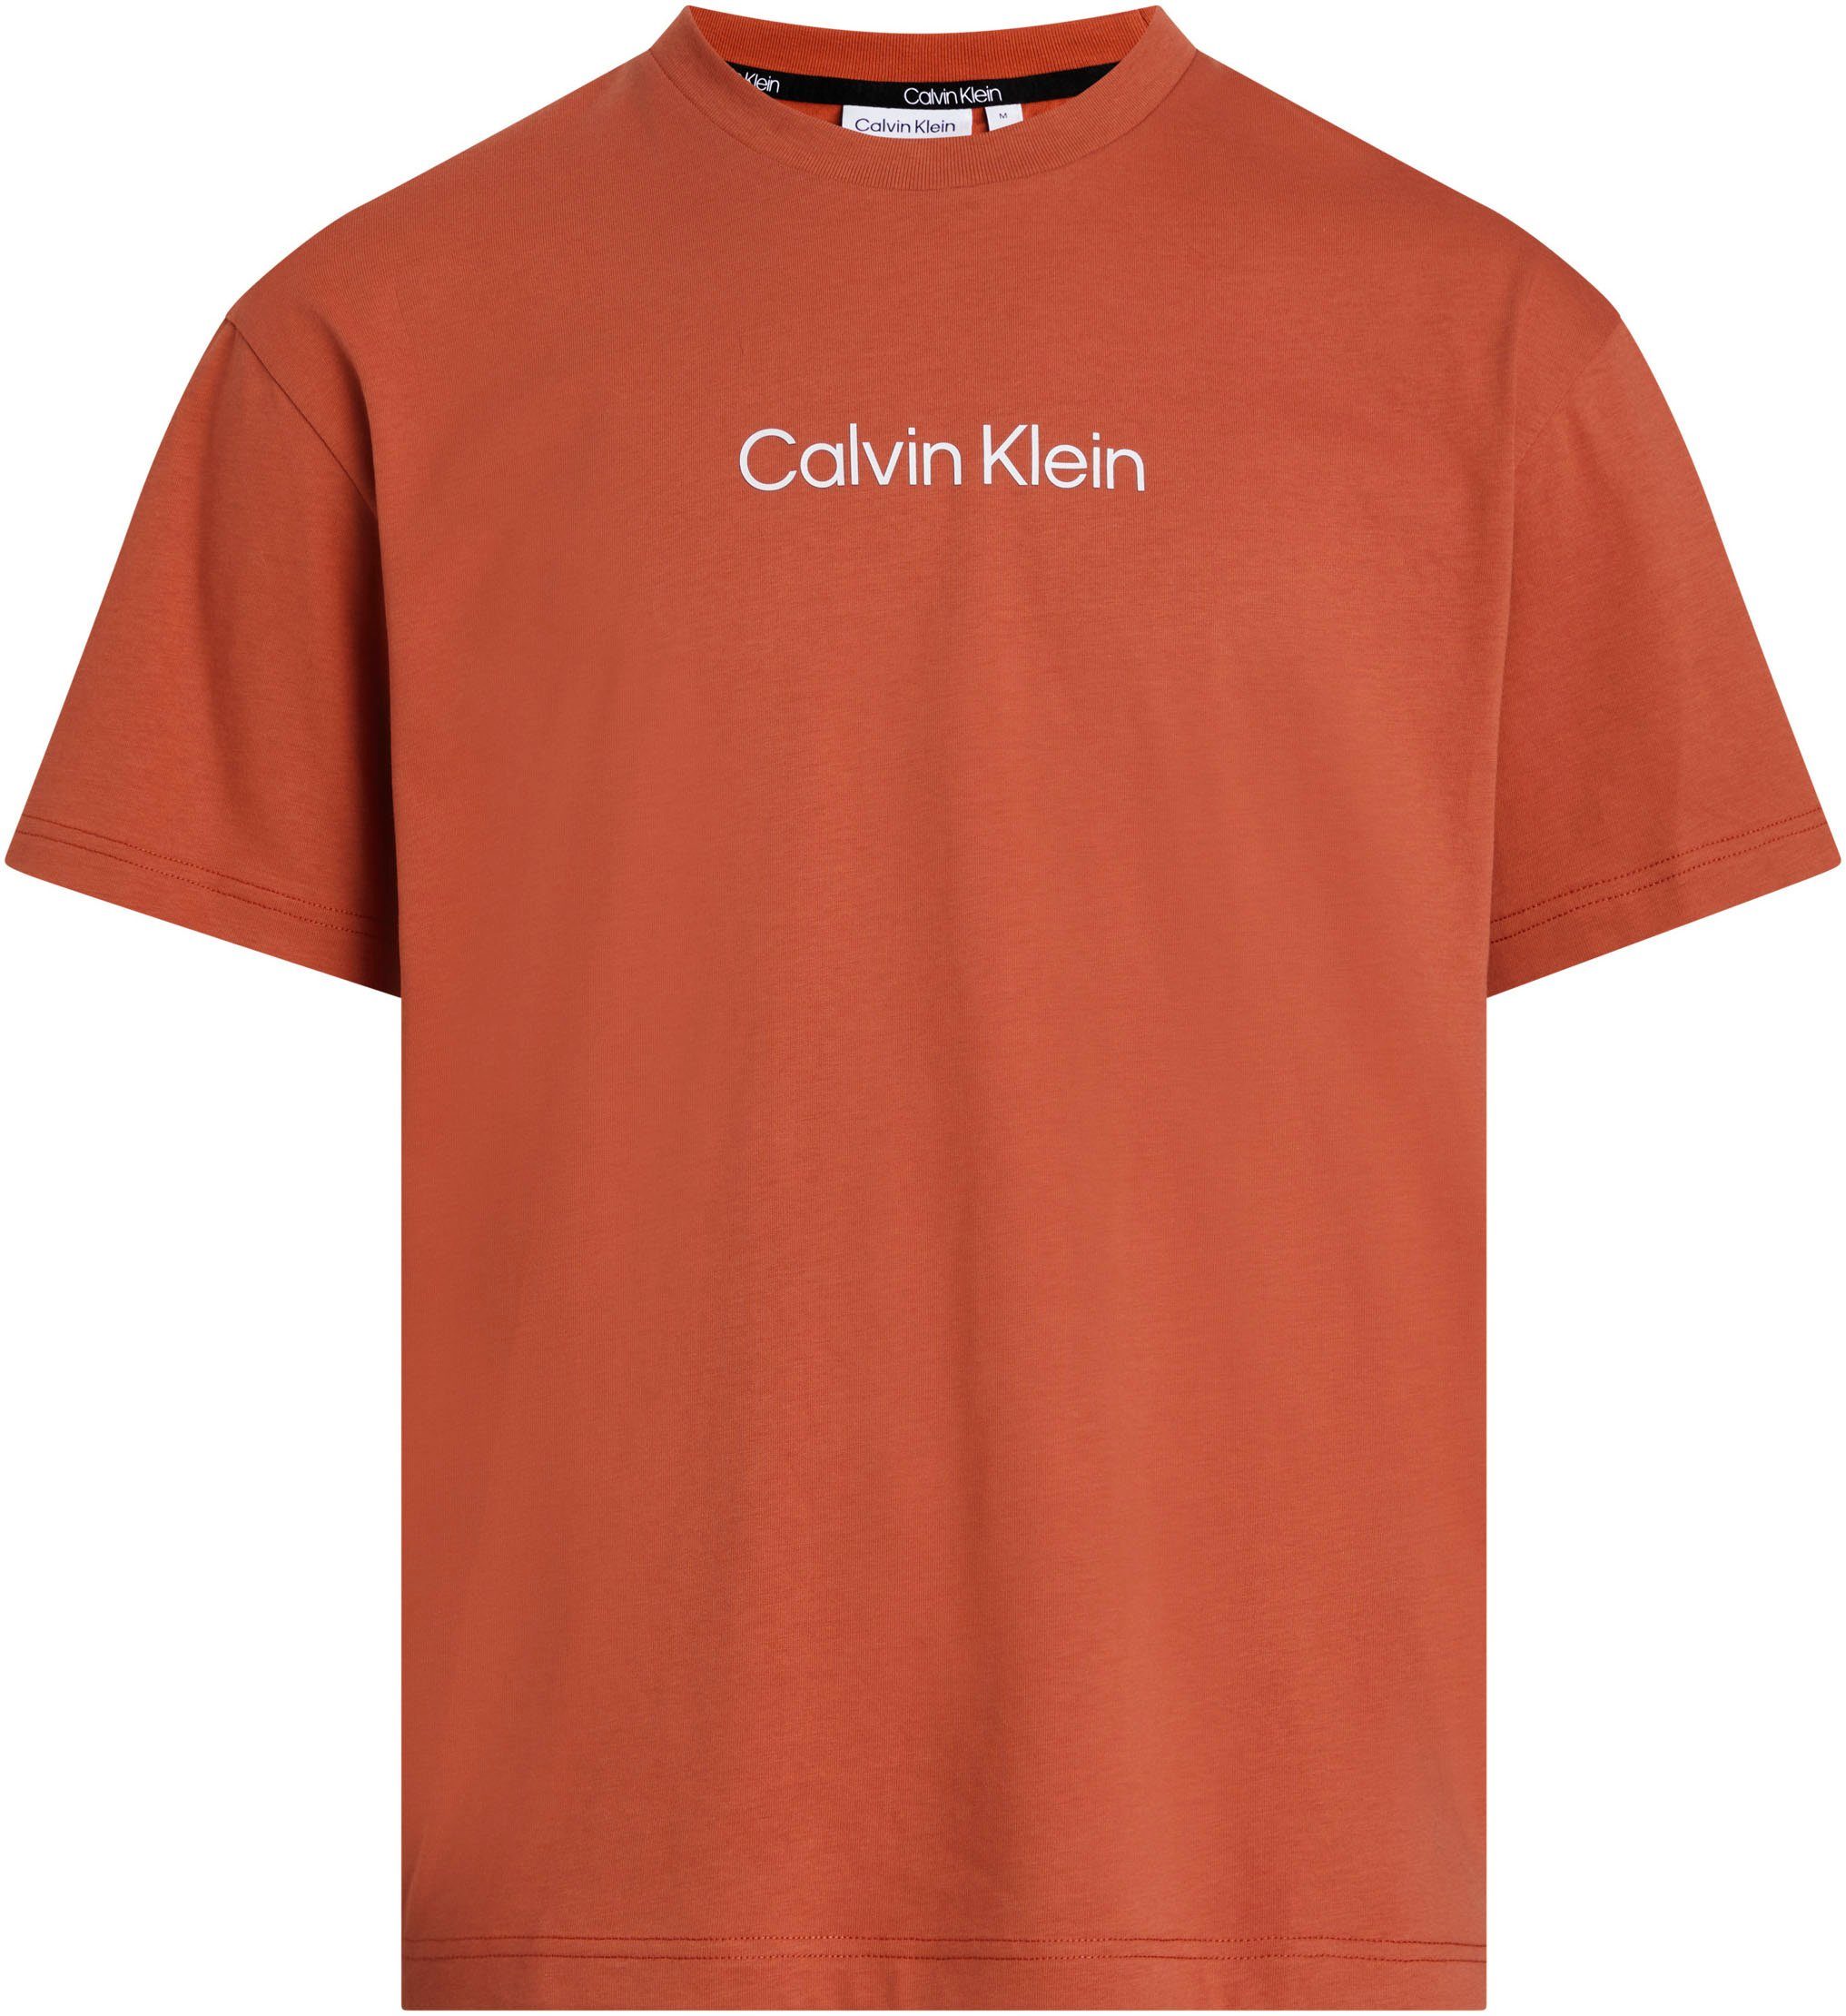 LOGO Sun COMFORT Calvin aufgedrucktem T-Shirt T-SHIRT HERO Copper mit Markenlabel Klein